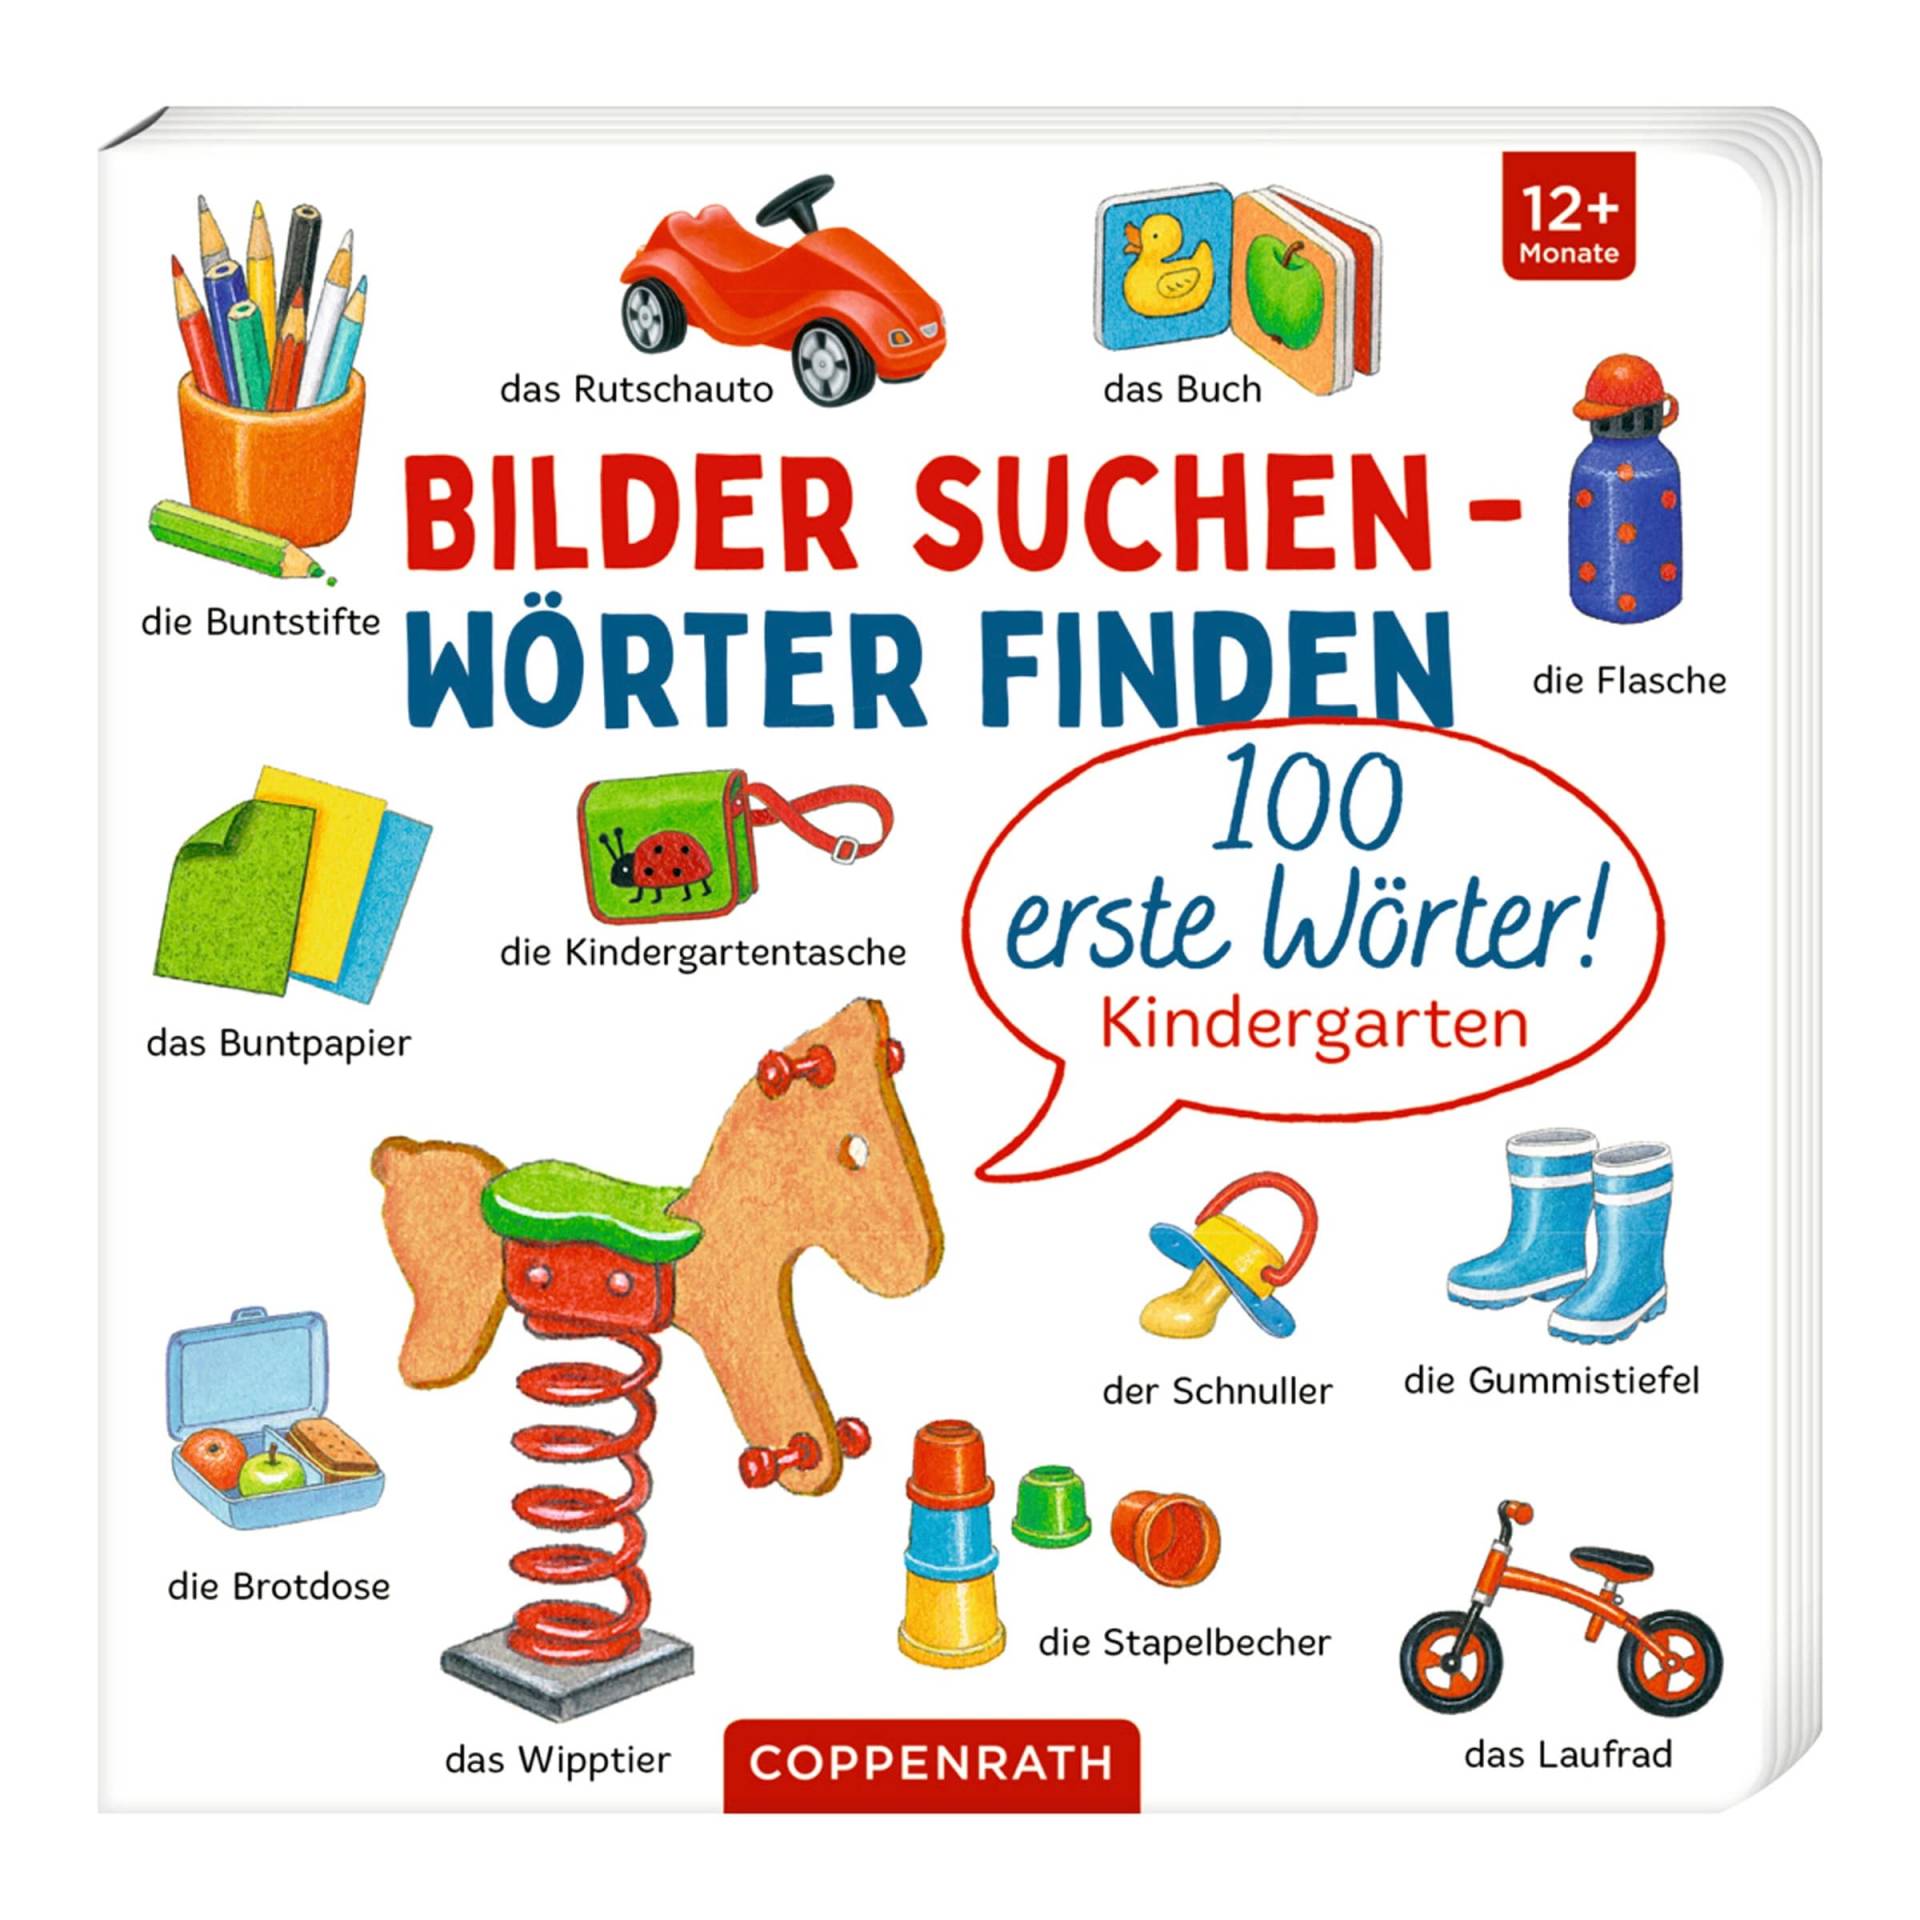 Coppenrath Die Spiegelburg Pappbilderbuch Bilder suchen - Wörter finden: 100 erste Wörter! von COPPENRATH DIE SPIEGELBURG